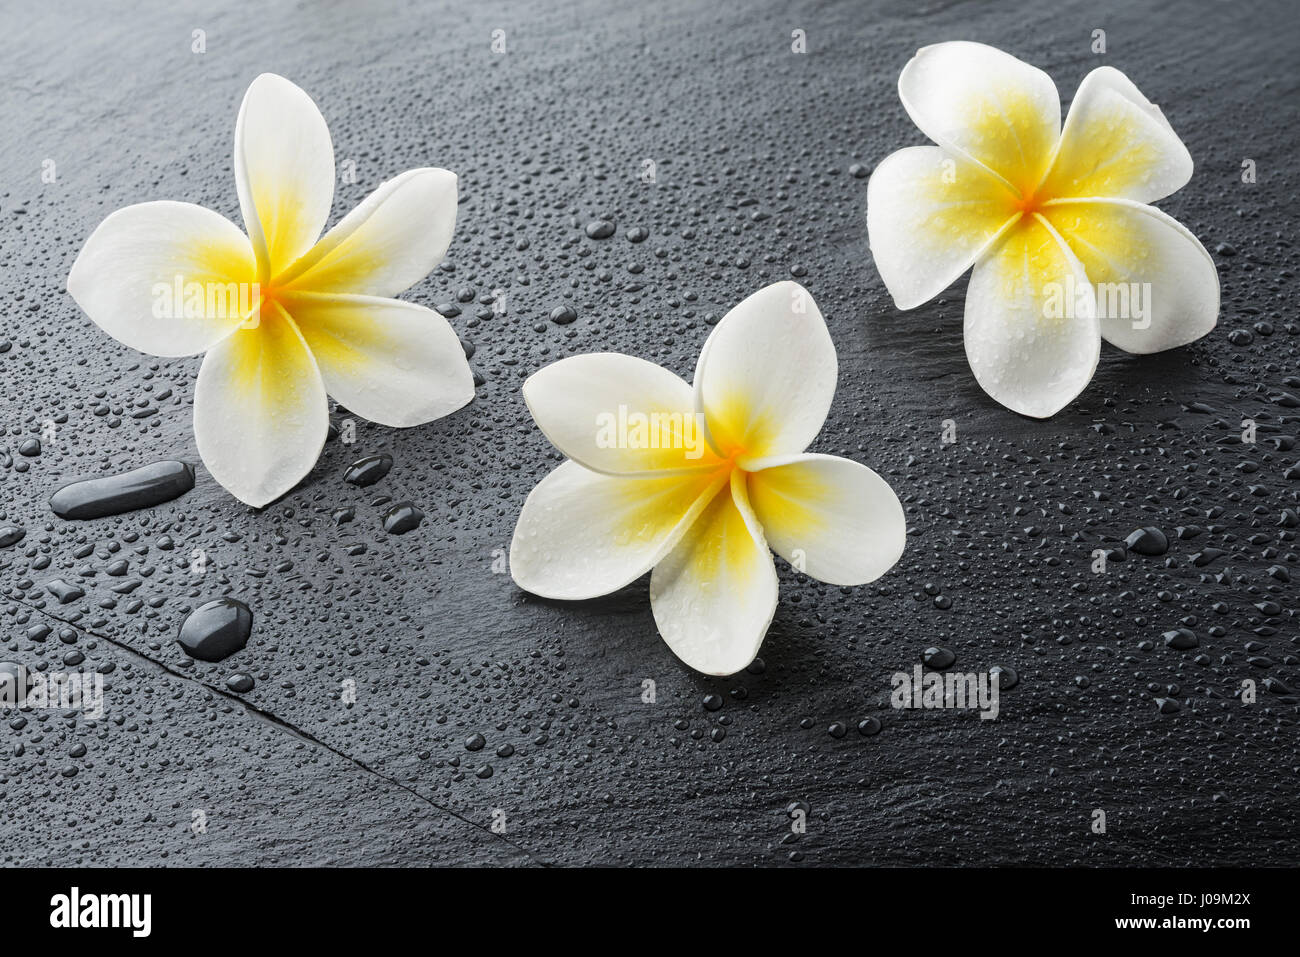 Tre Frangipani plumeria Spa fiori sul bagnato pietra nera piastra di ardesia con gocce d'acqua Foto Stock